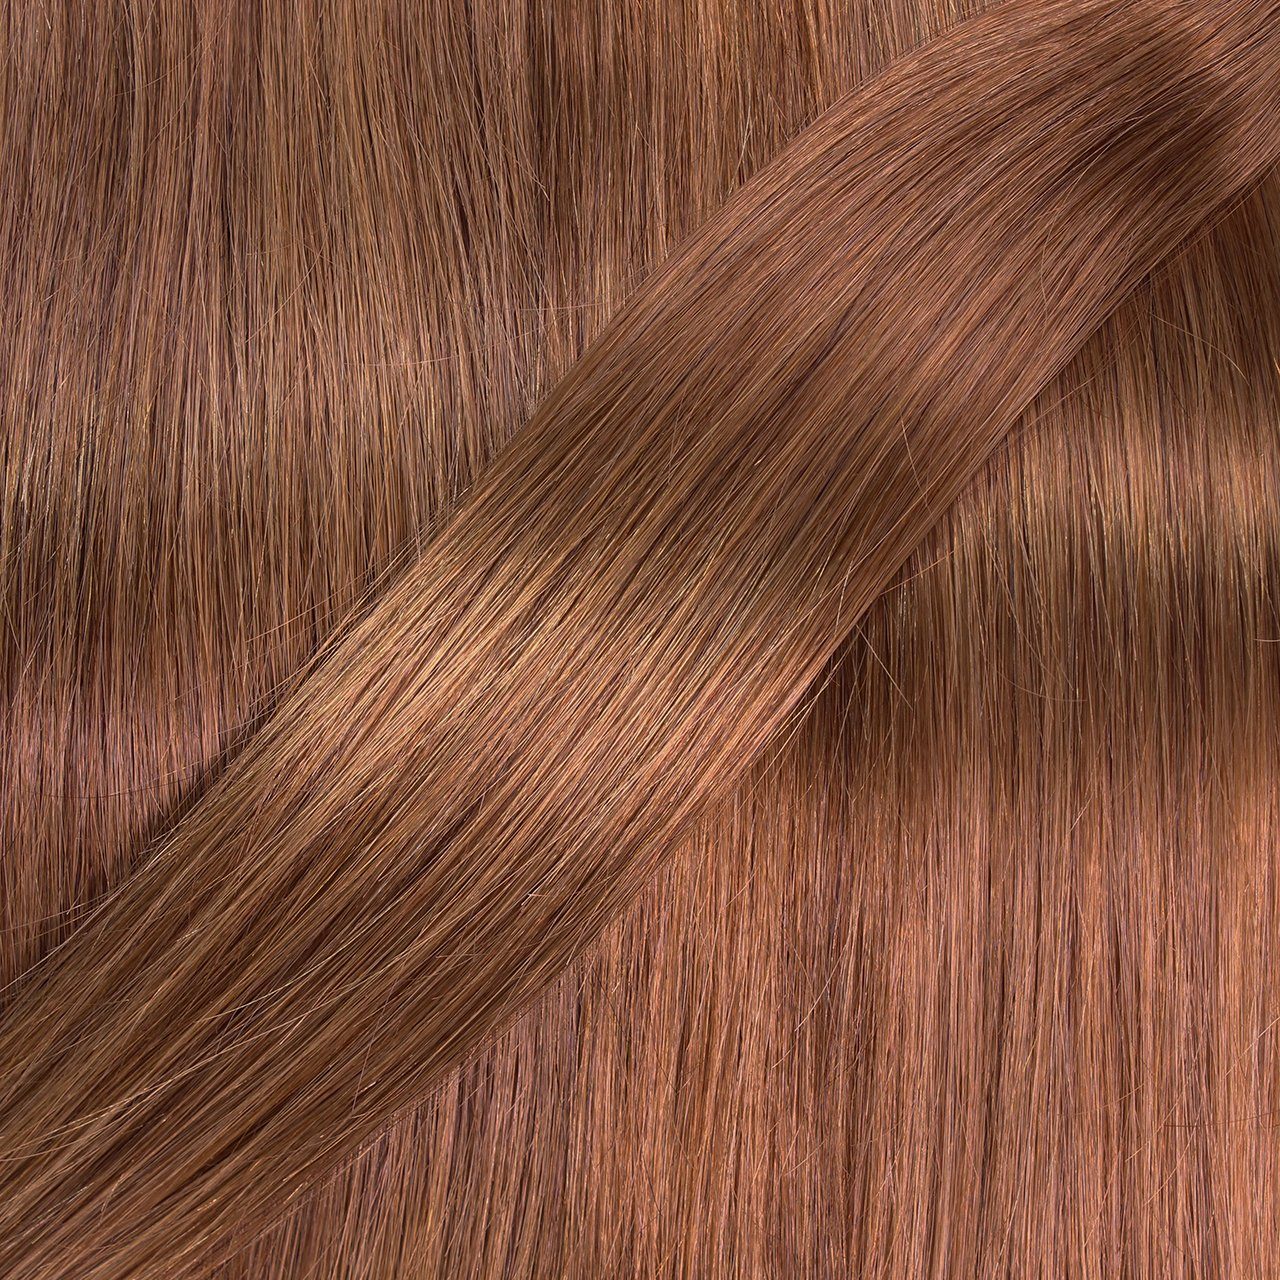 hair2heart Echthaar-Extension Seamless Clip Extensions Natur-Gold #8/03 30cm Hellblond